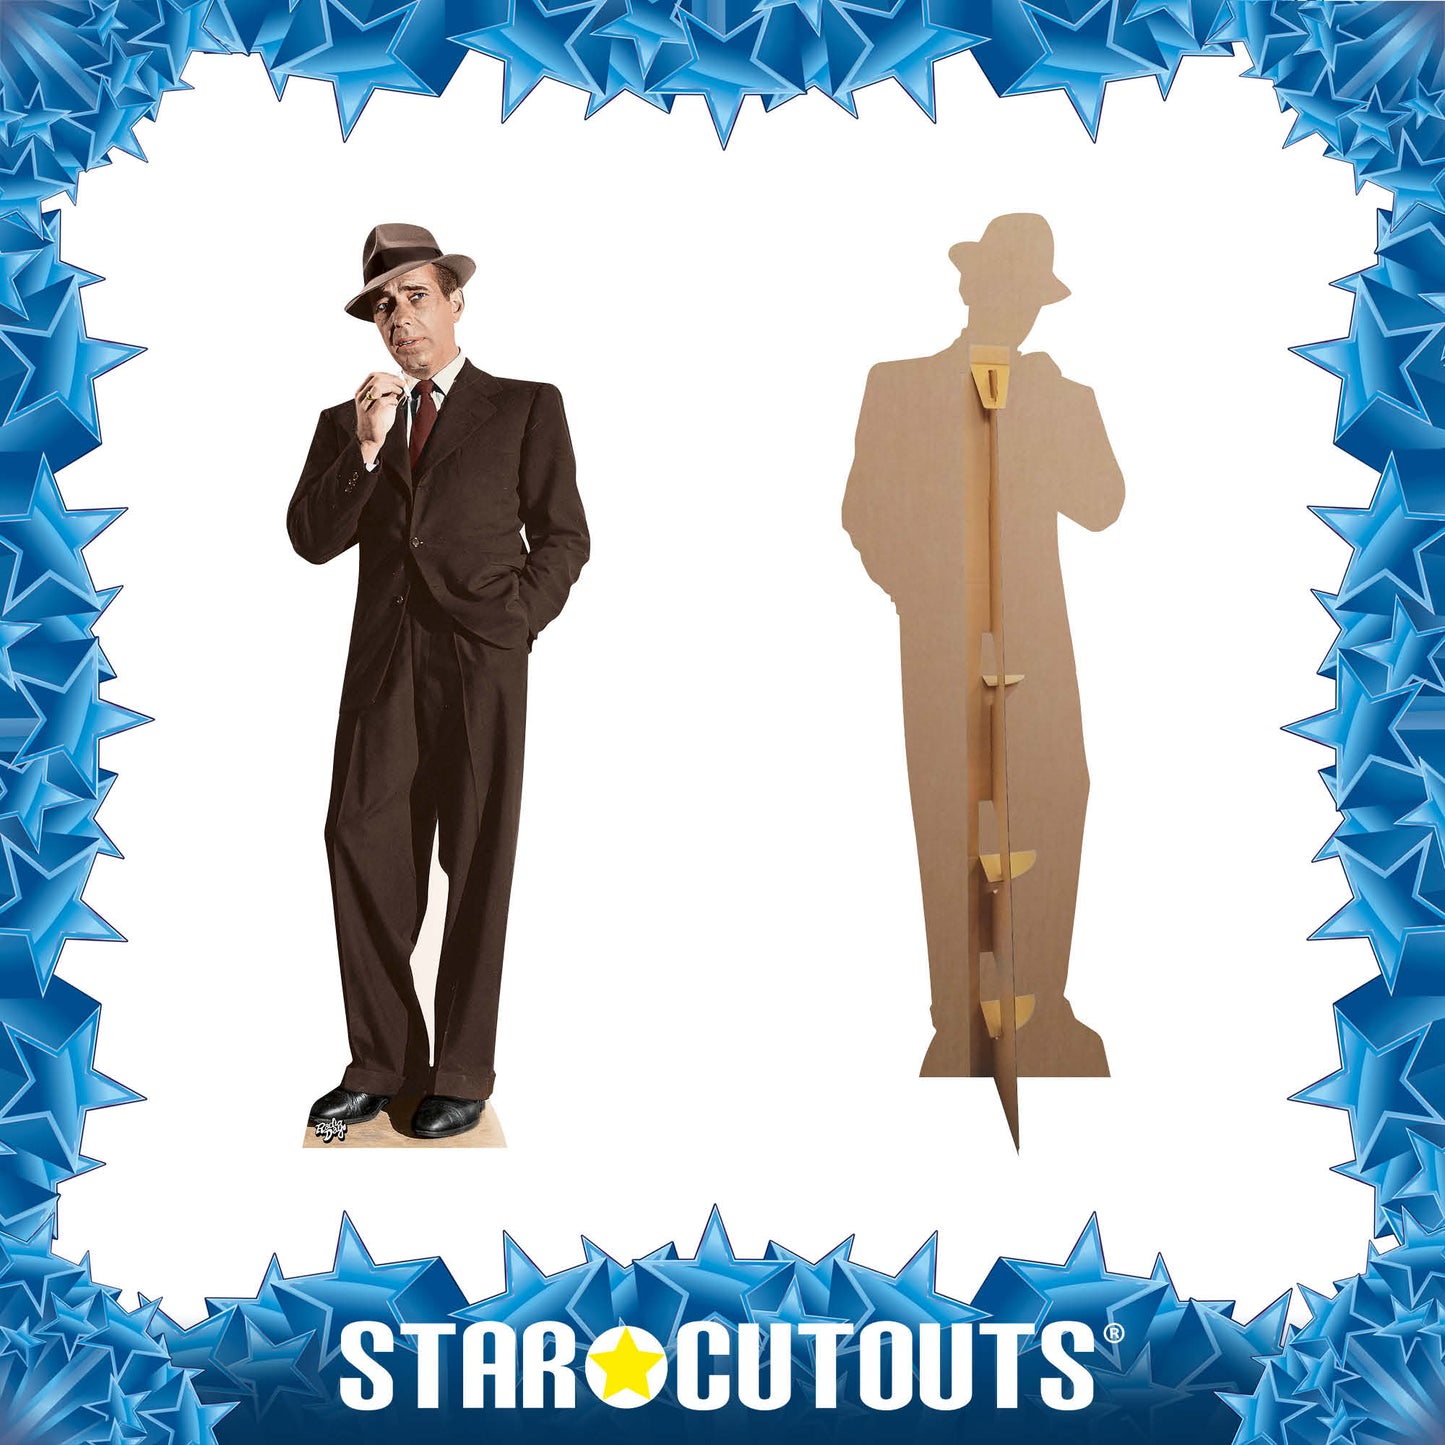 SC525 Humphrey Bogart Cardboard Cut Out Height 181cm